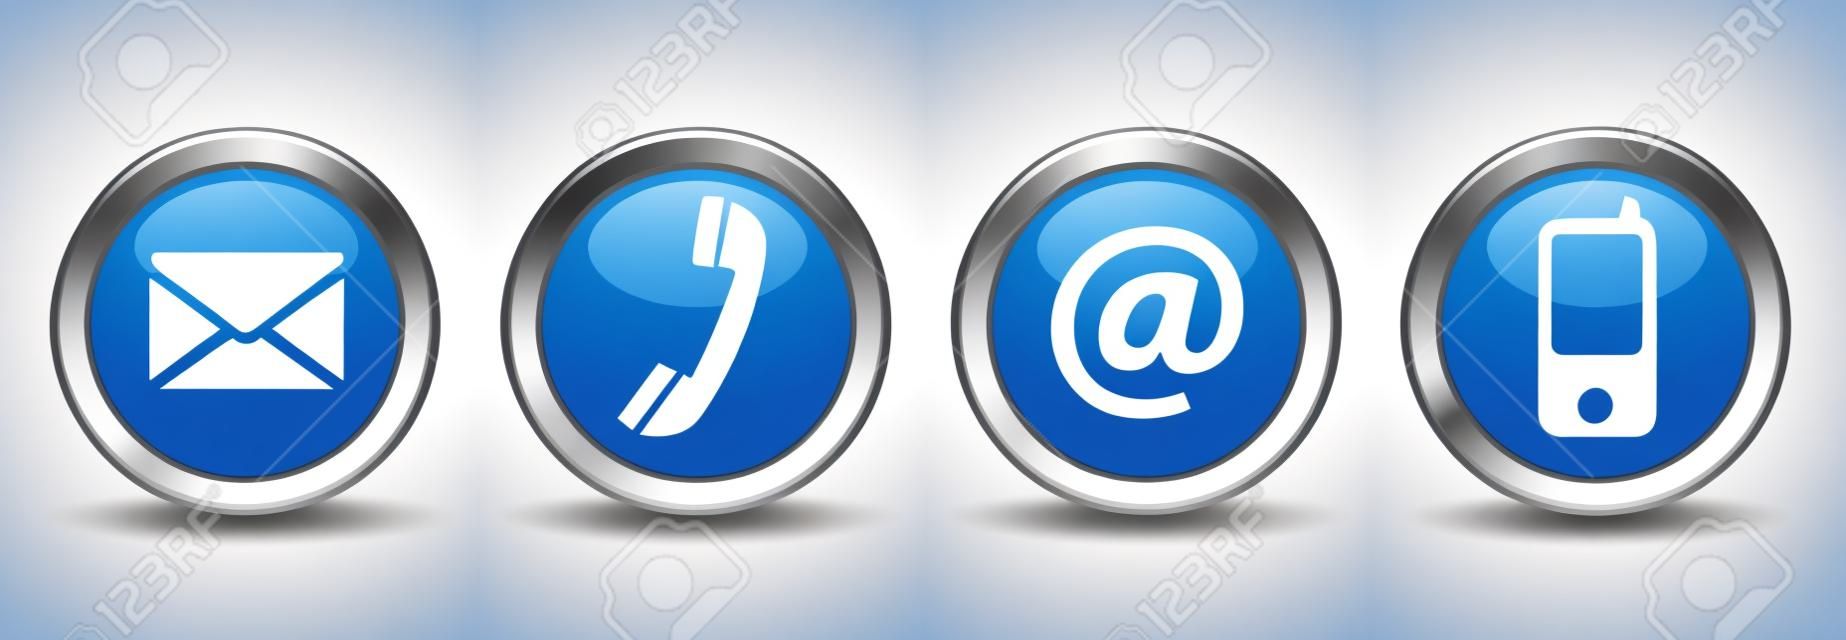 Contacteer ons web knoppen ingesteld met e-mail, op, telefoon en mobiele pictogrammen op blauwe zilveren badge vector EPS 10 illustratie geïsoleerd op witte achtergrond.